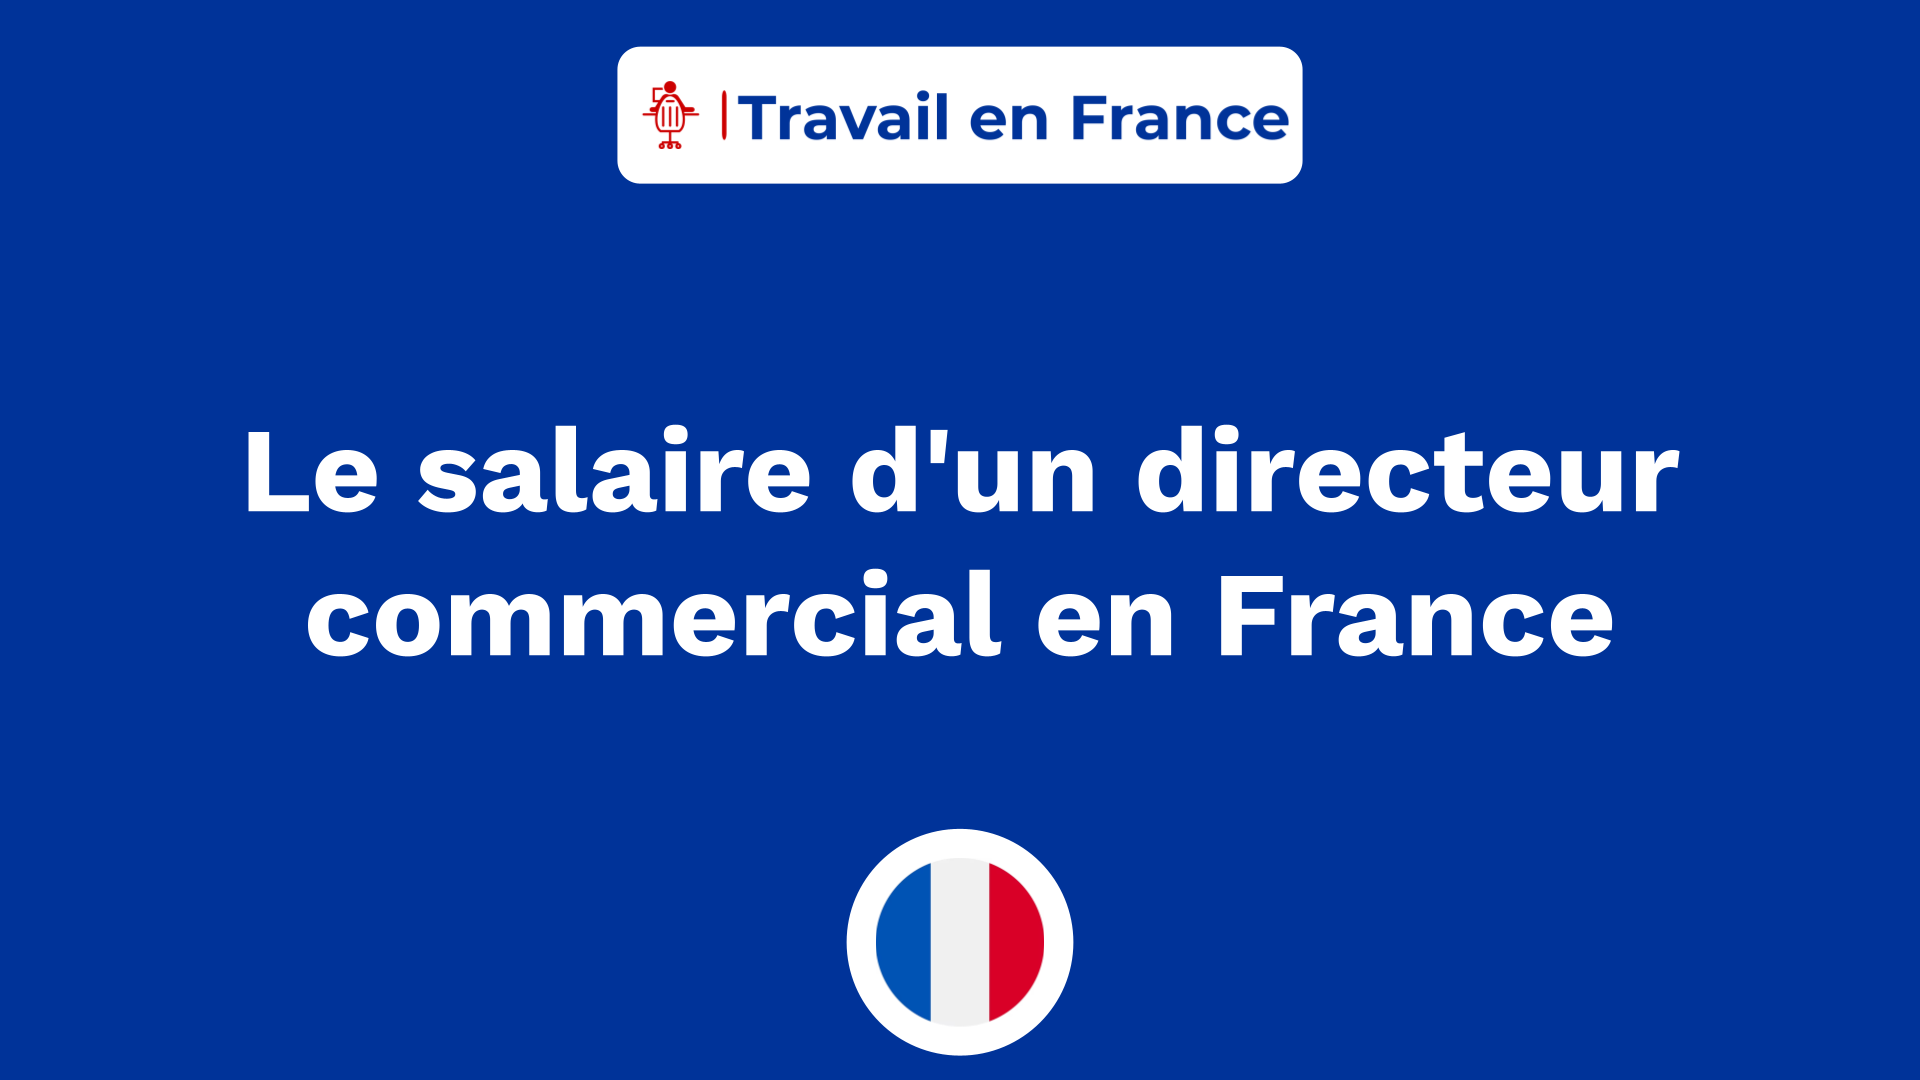 Le salaire d'un directeur commercial en France